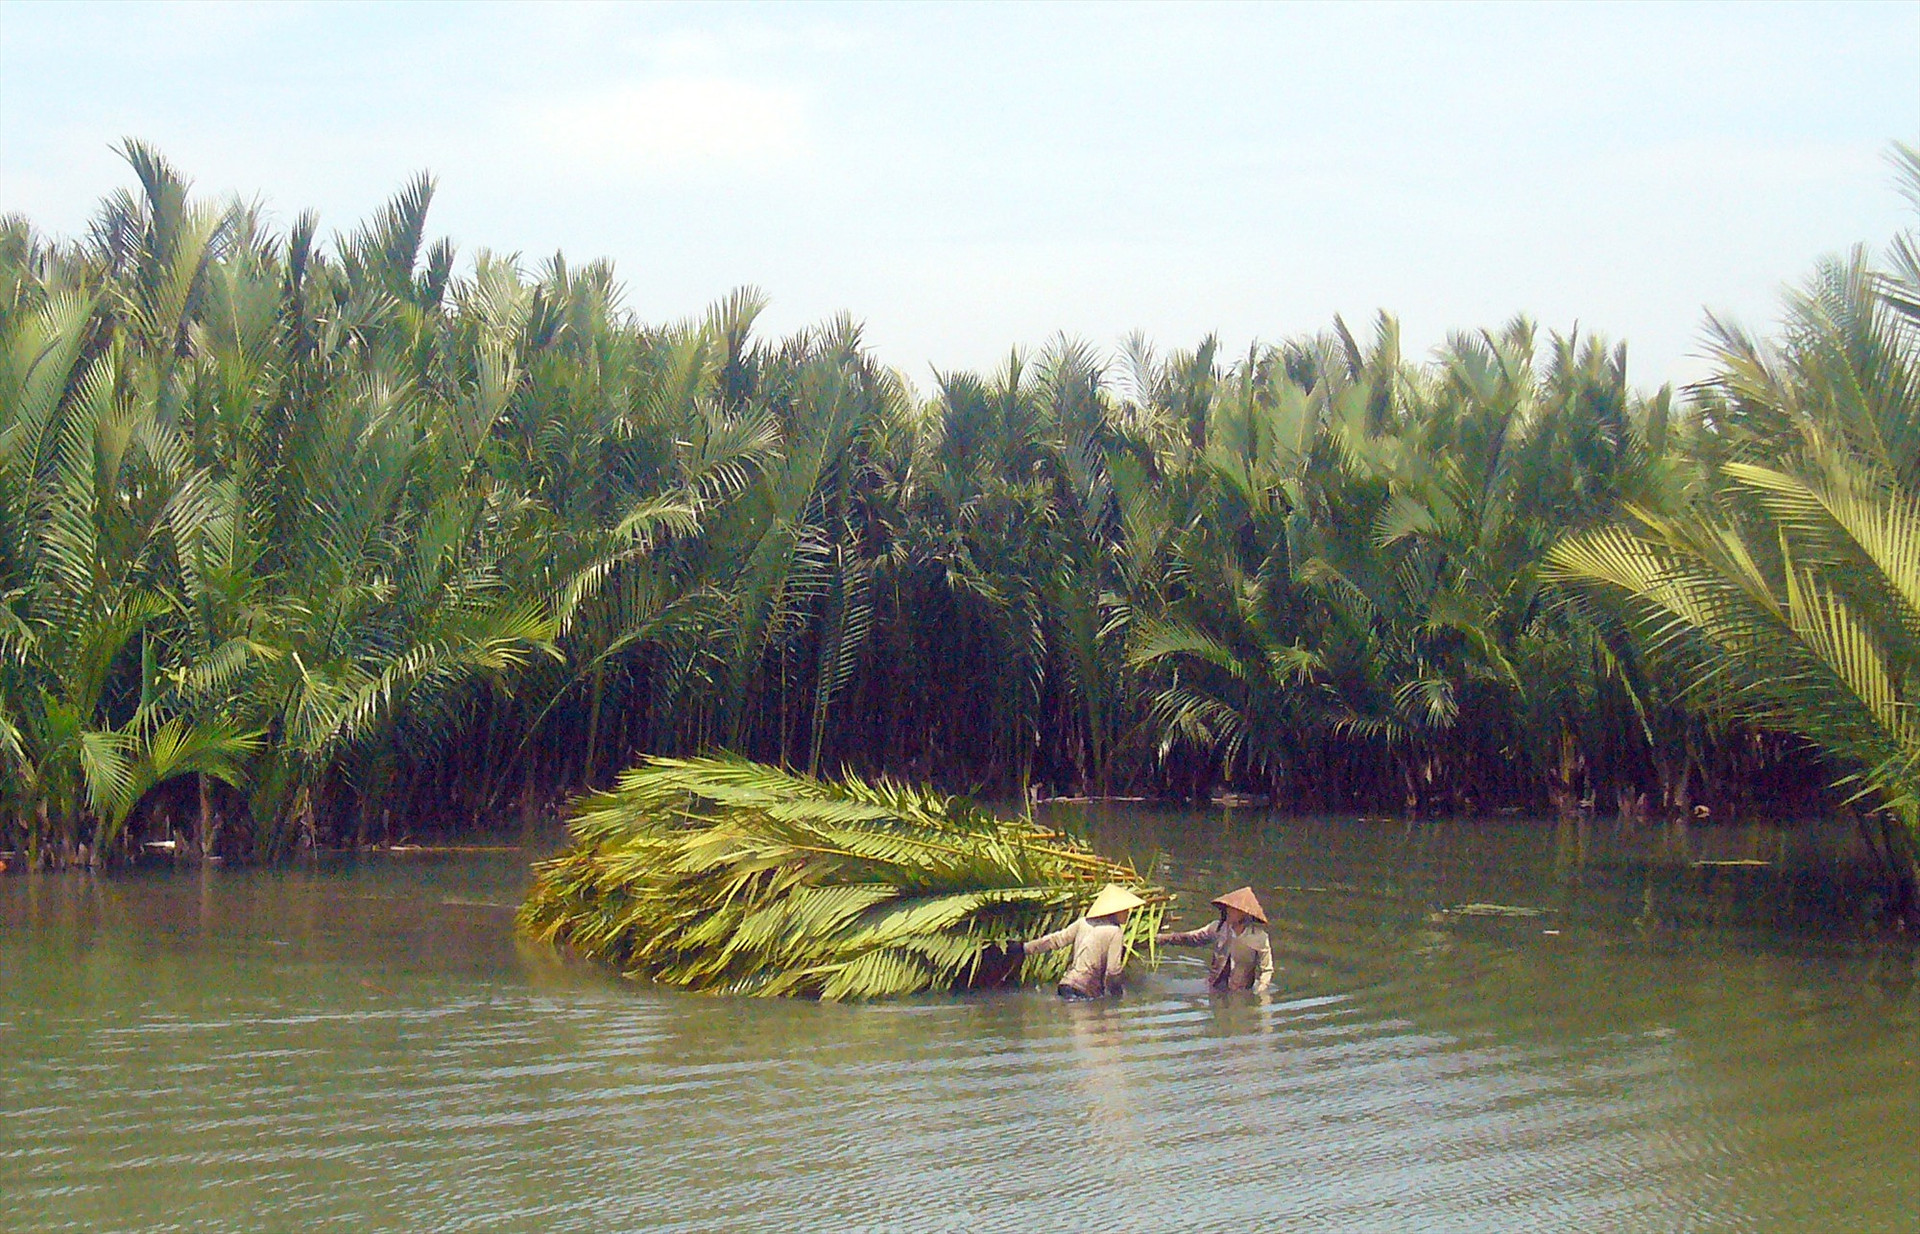 Cộng đồng cư dân xã Cẩm Thanh nêu cao ý thức bảo vệ rừng dừa và giữ vệ sinh môi trường vùng sông nước. Ảnh: ĐỖ HUẤN